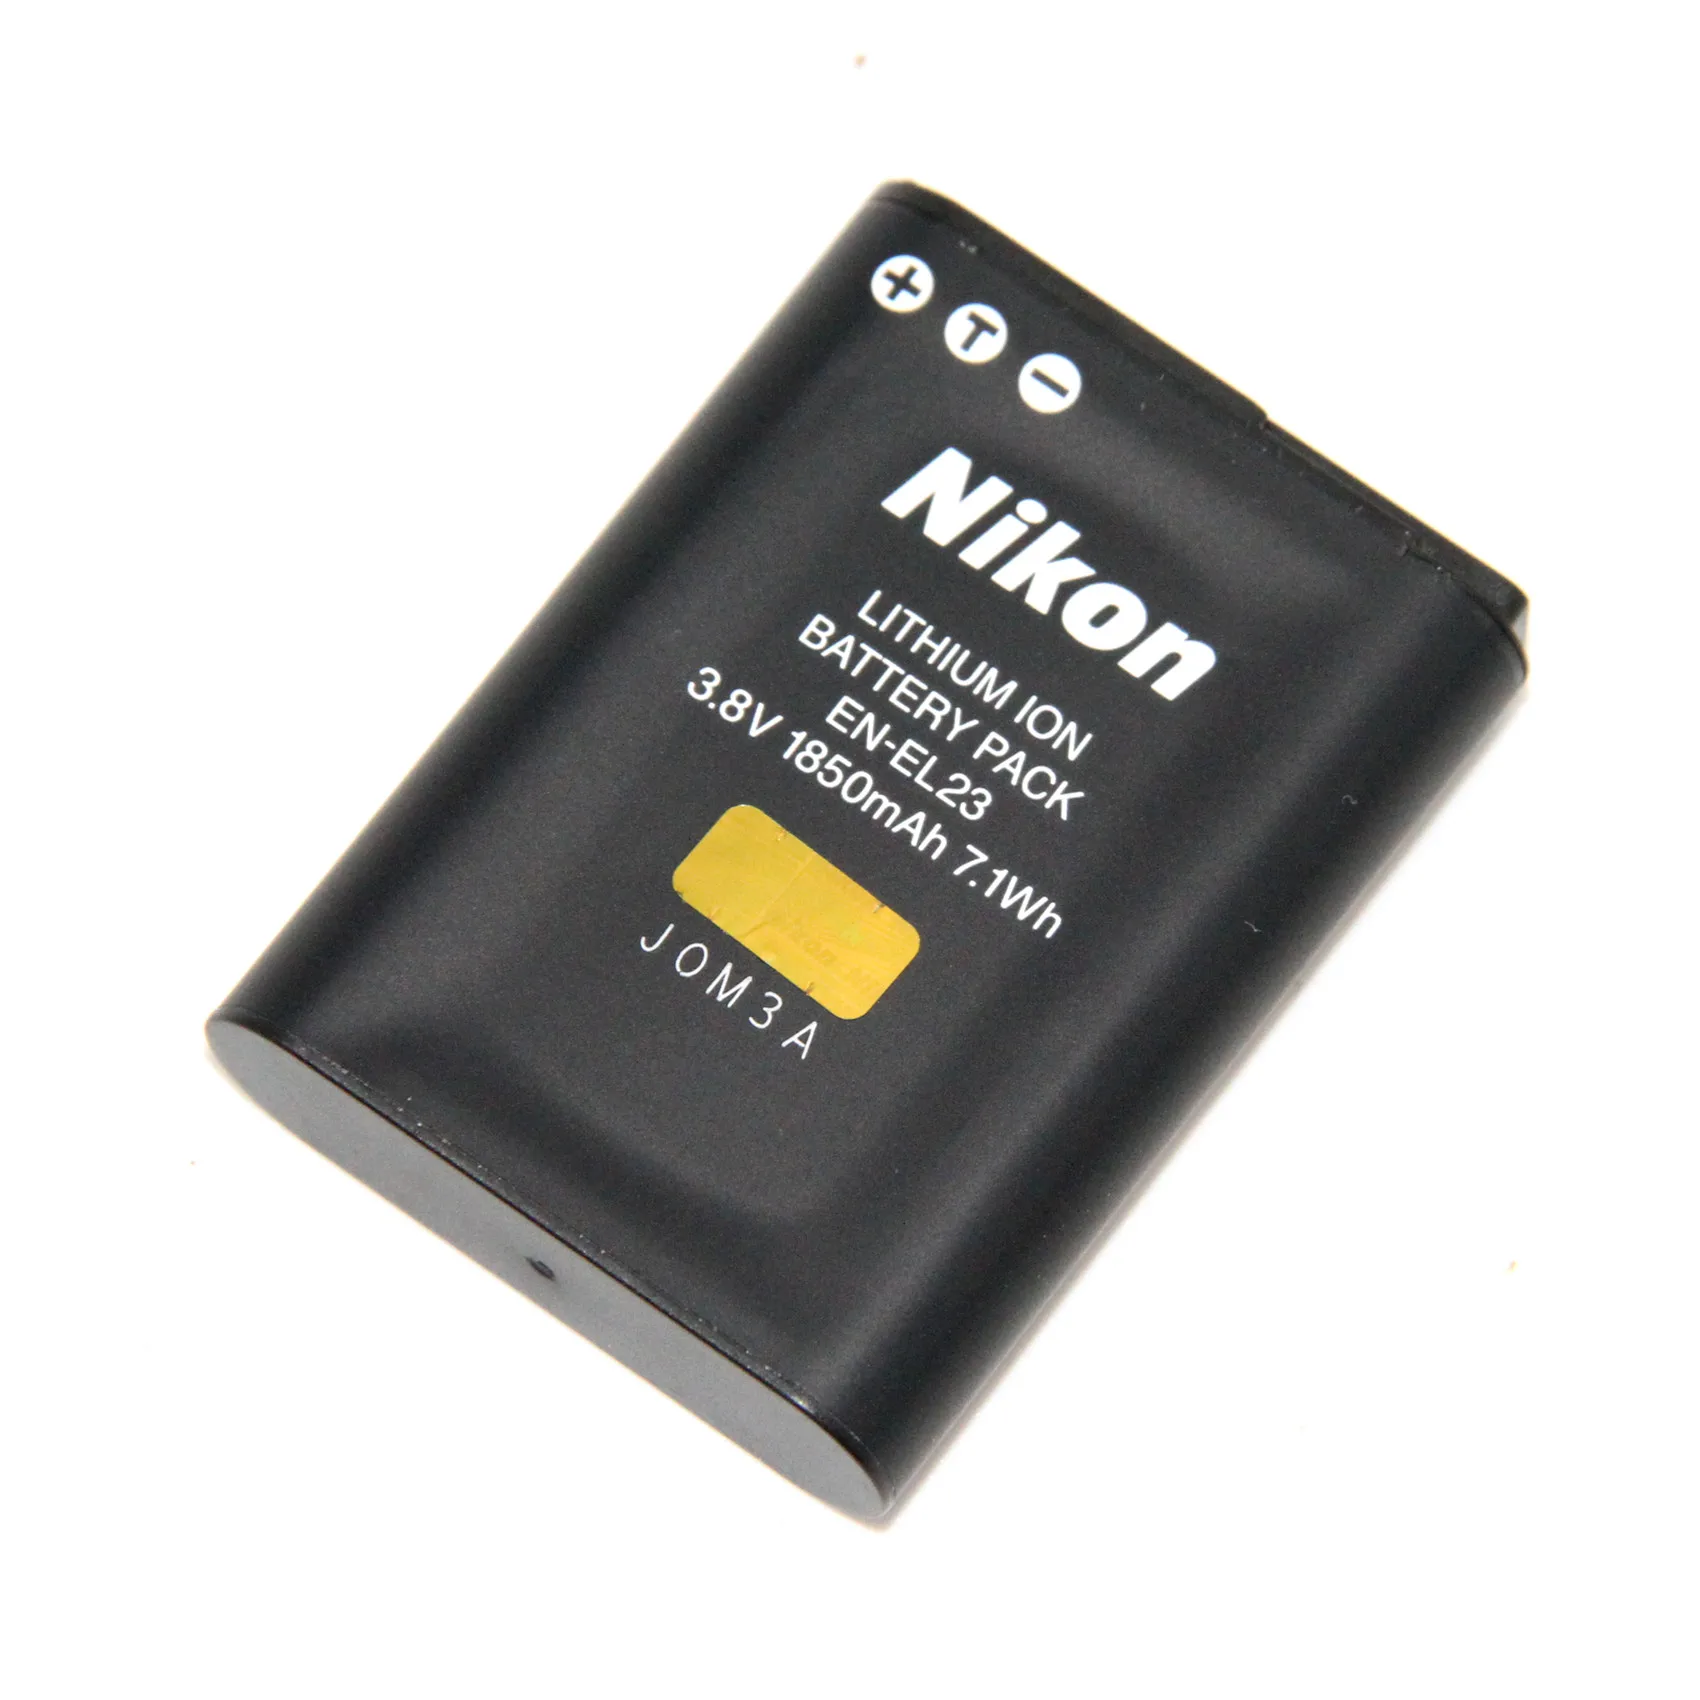 

EN-EL23 EN EL23 3.8V 1850mAh Rechargeable Li-ion Batteries For Nikon COOLPIX S810c P900 P900s P610 P600 B700 Camera Battery